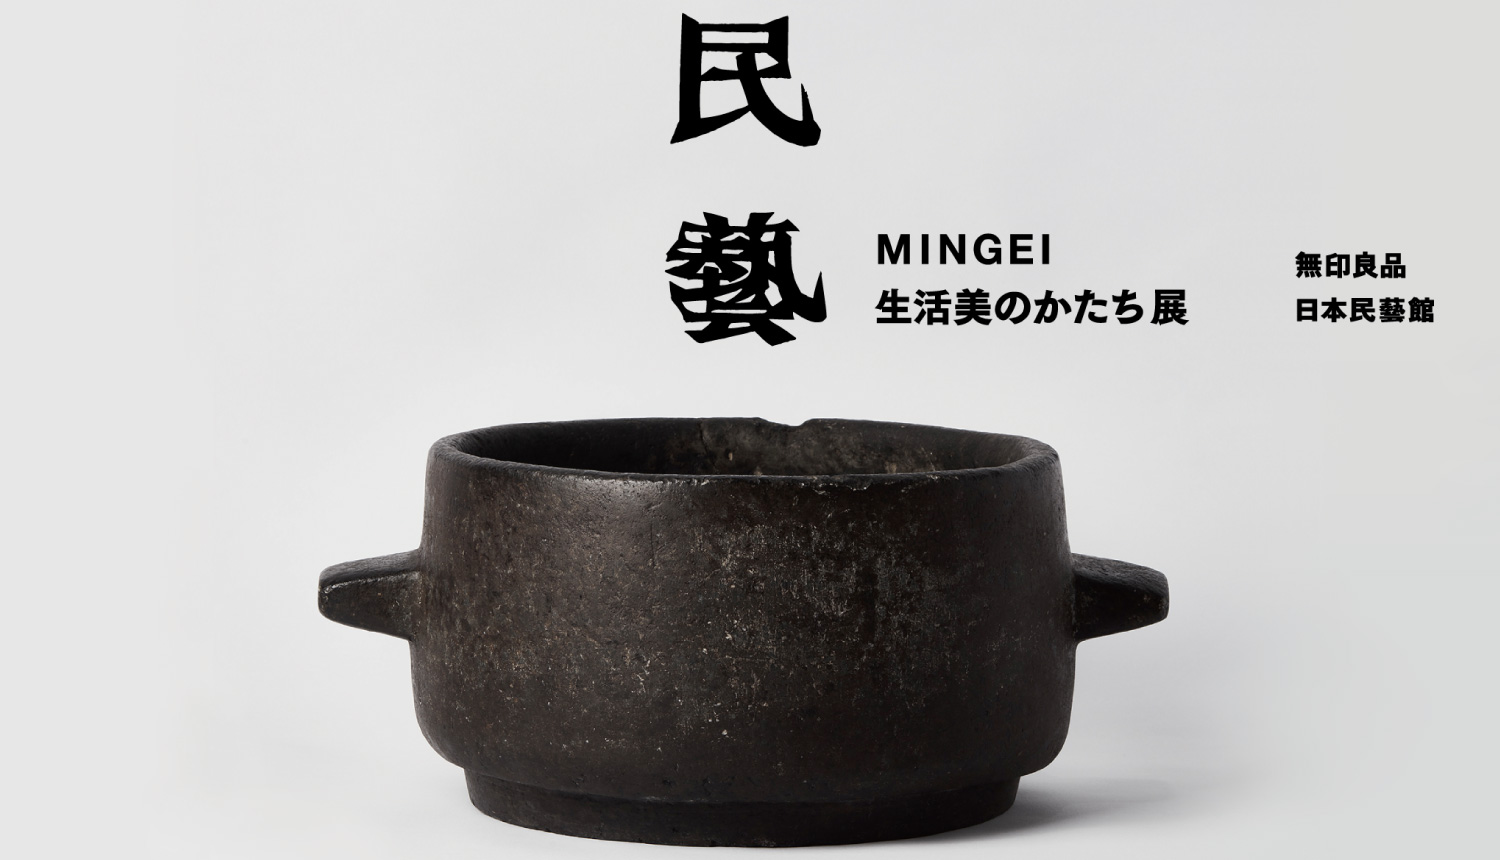 民藝-MINGEI-生活美のかたち展-MINGEI-exhibition-展示-